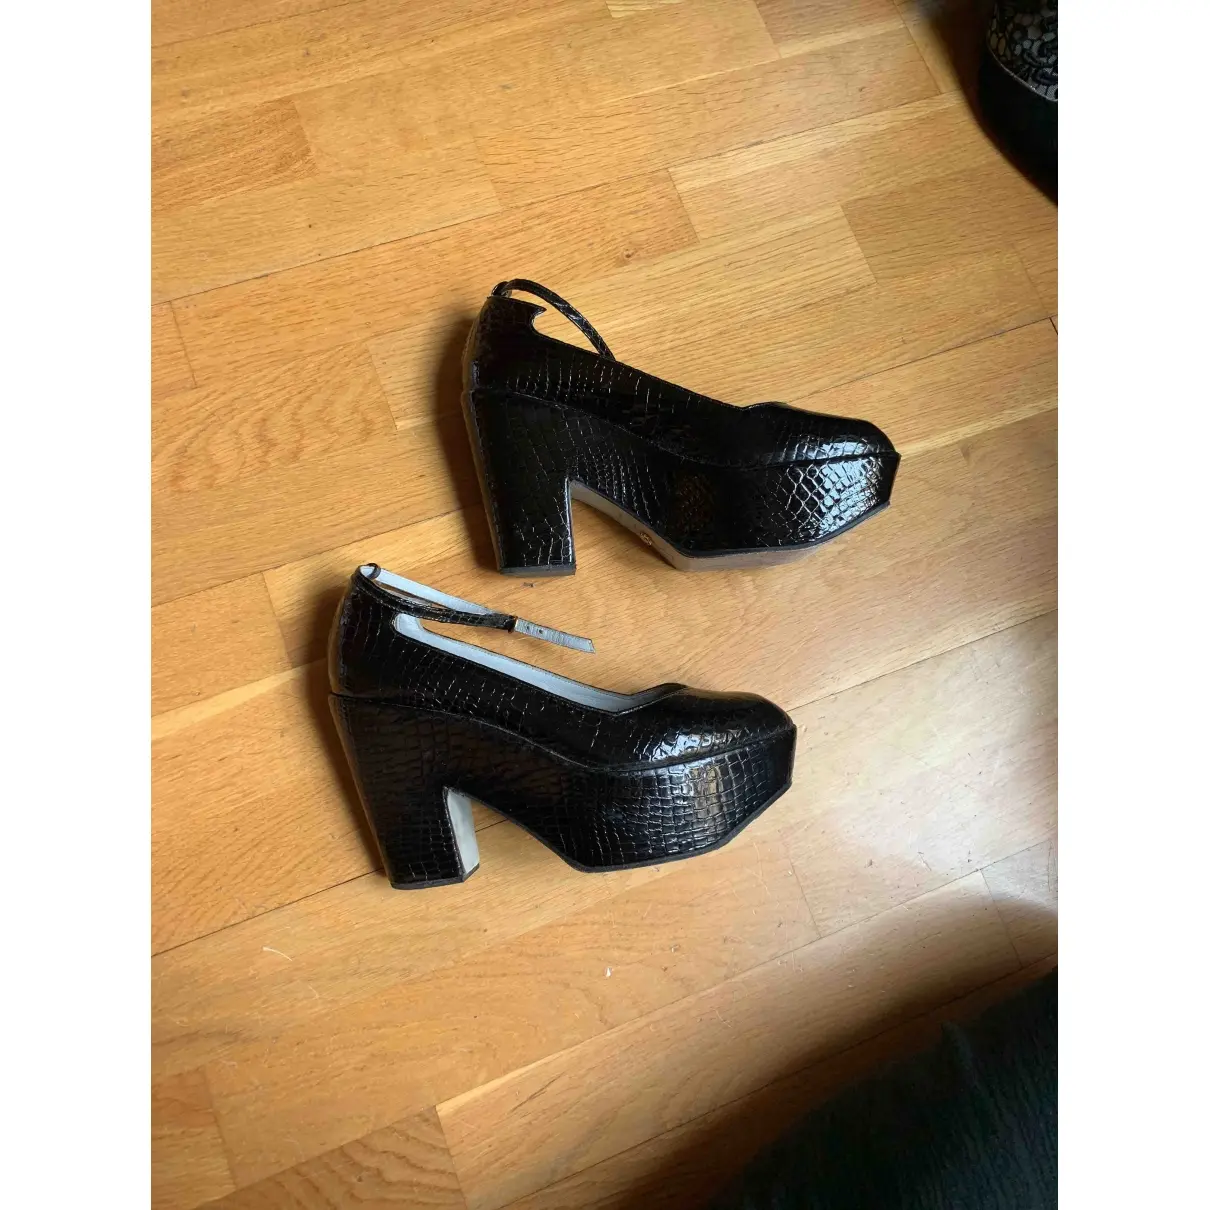 Buy Amélie Pichard Patent leather heels online